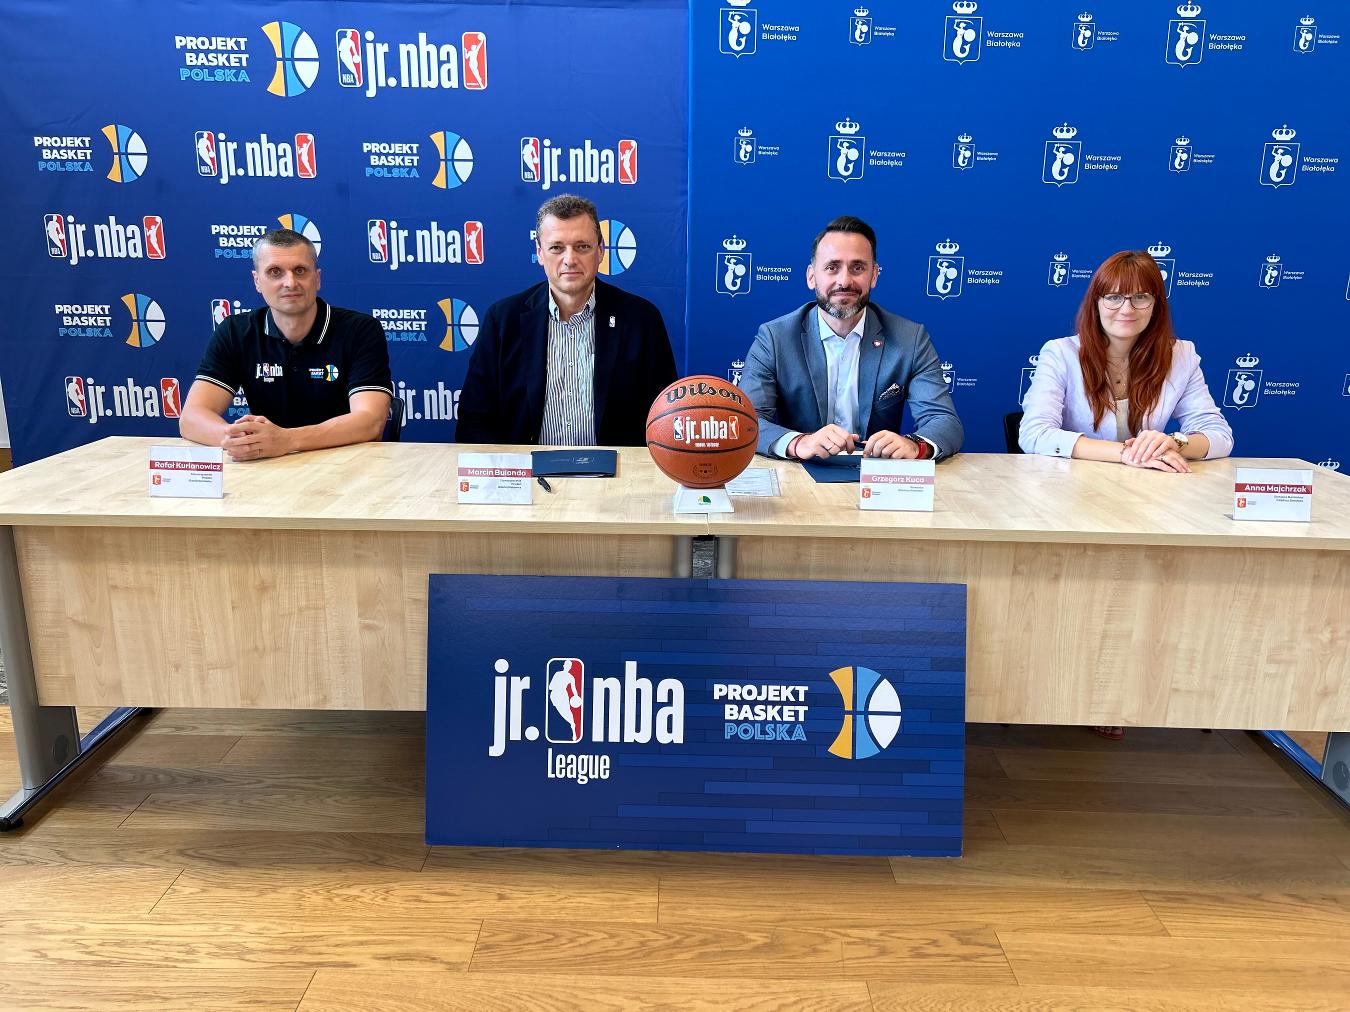 Umowa na turnieje Jr. NBA podpisana w Warszawie